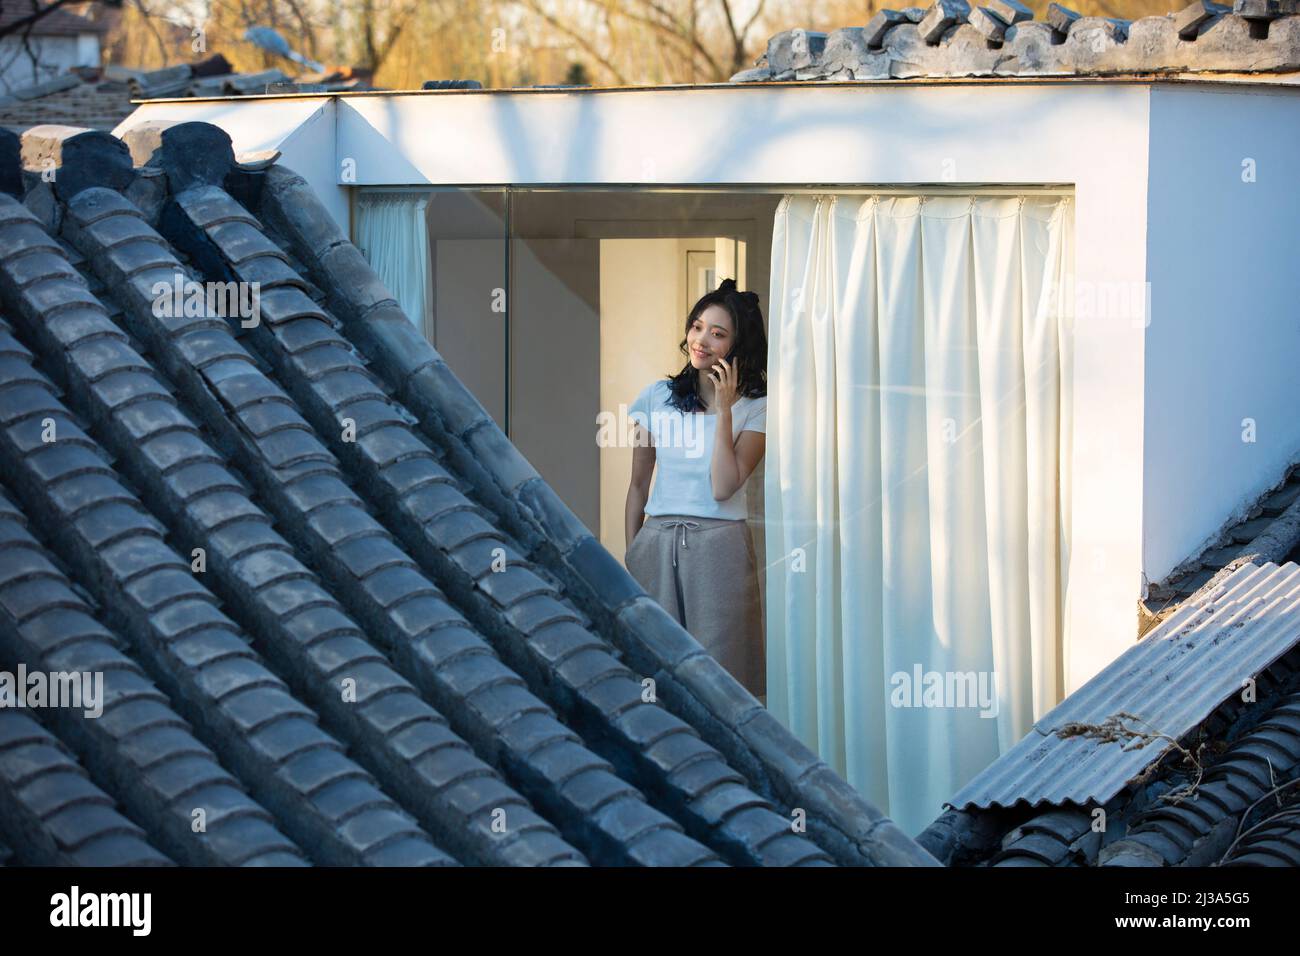 Giovane ragazza cinese che si gode il paesaggio architettonico tradizionale del siheyuan di Pechino in una finestra da pavimento a soffitto - foto di scorta Foto Stock